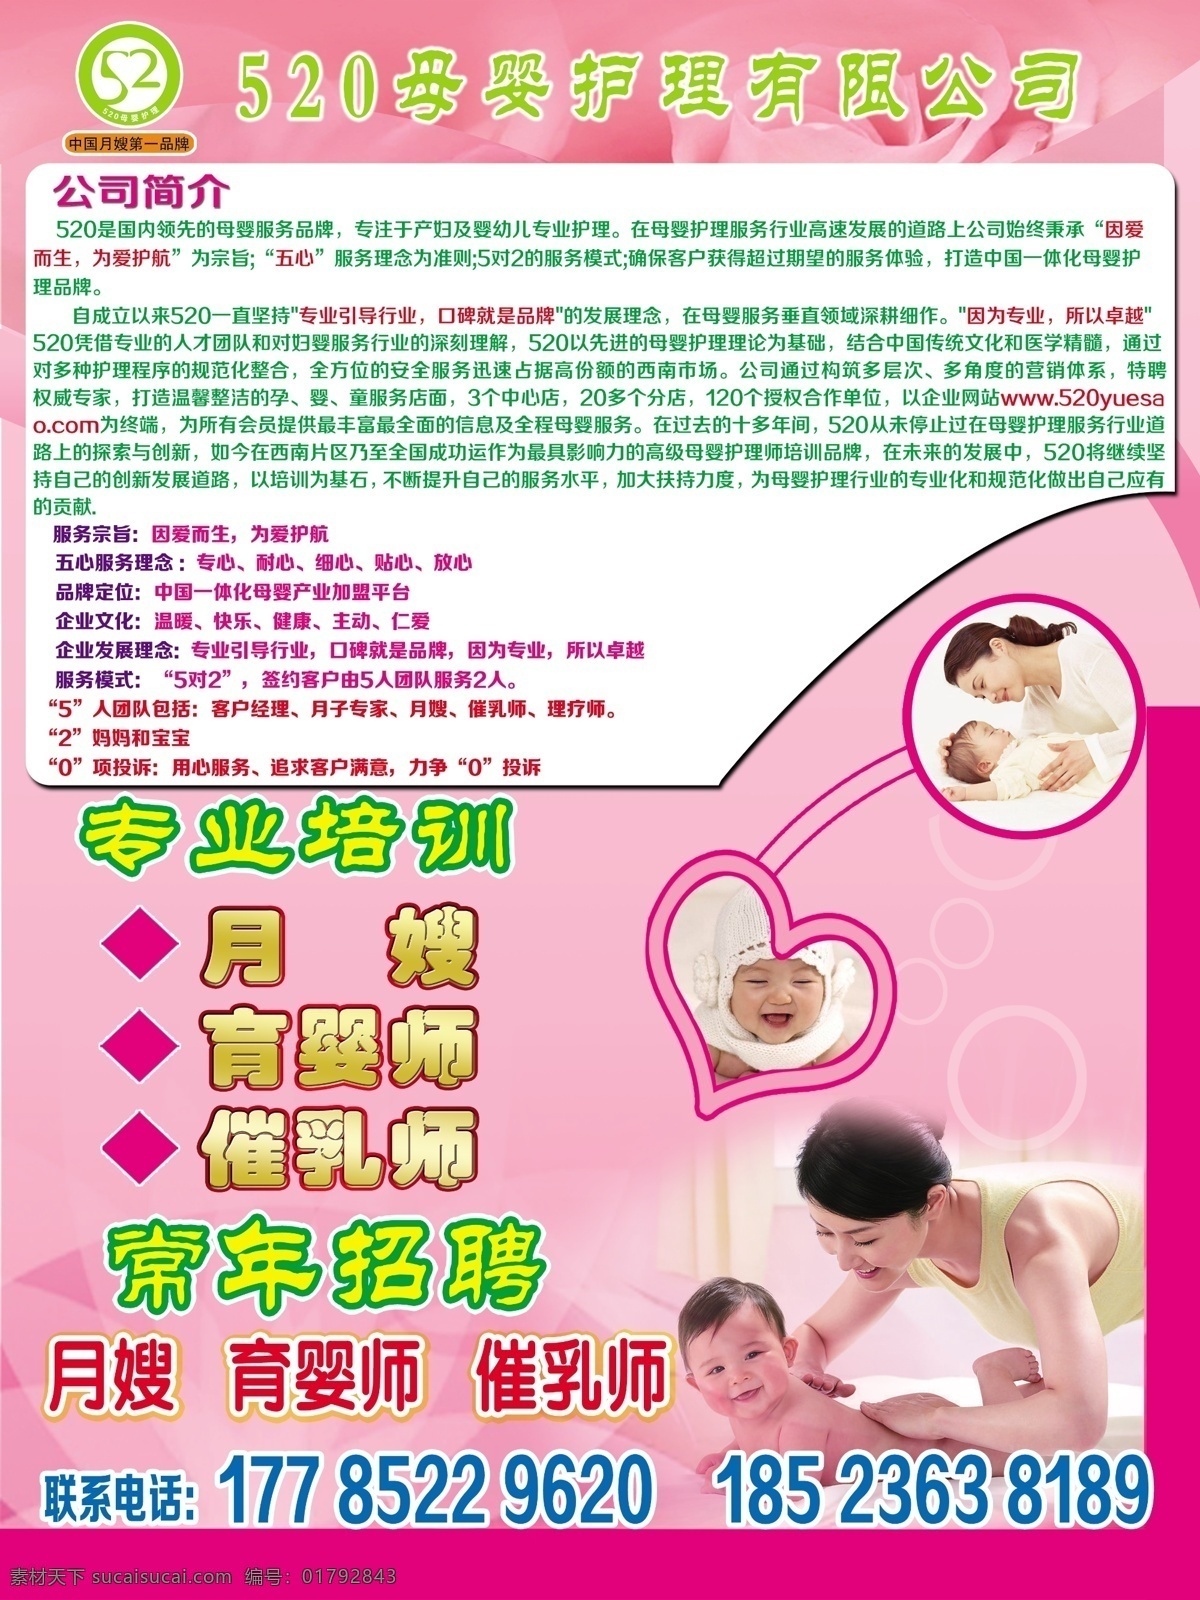 母婴护理传单 粉色传单 母婴护理 粉色背景 婴儿 宝宝 母婴 公司简介 桃心 造型